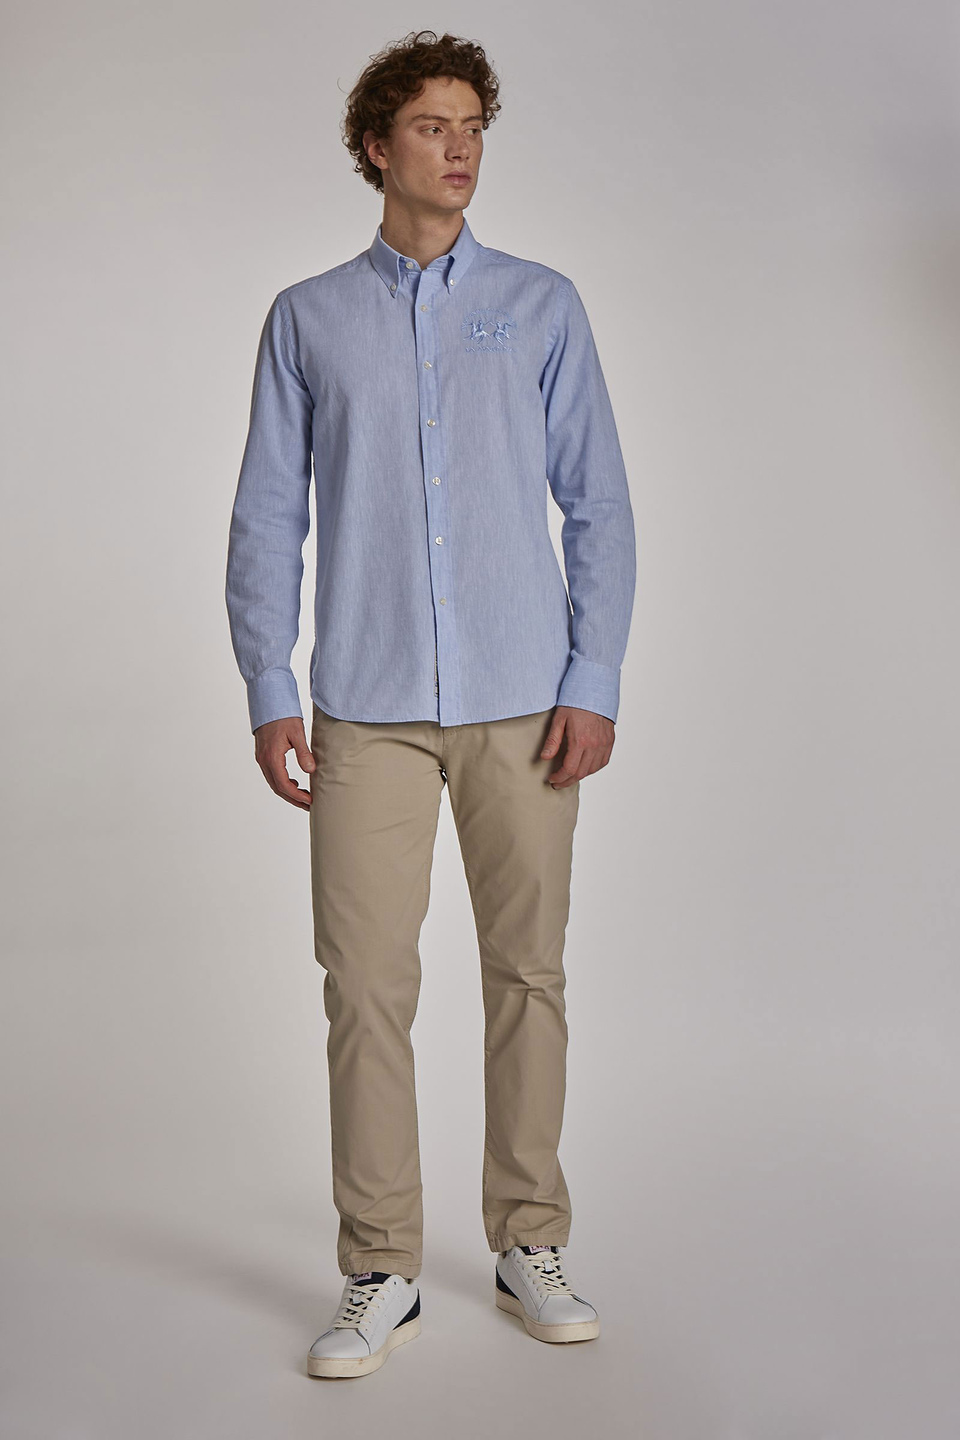 Chemise homme à manches longues et coupe slim | La Martina - Official Online Shop